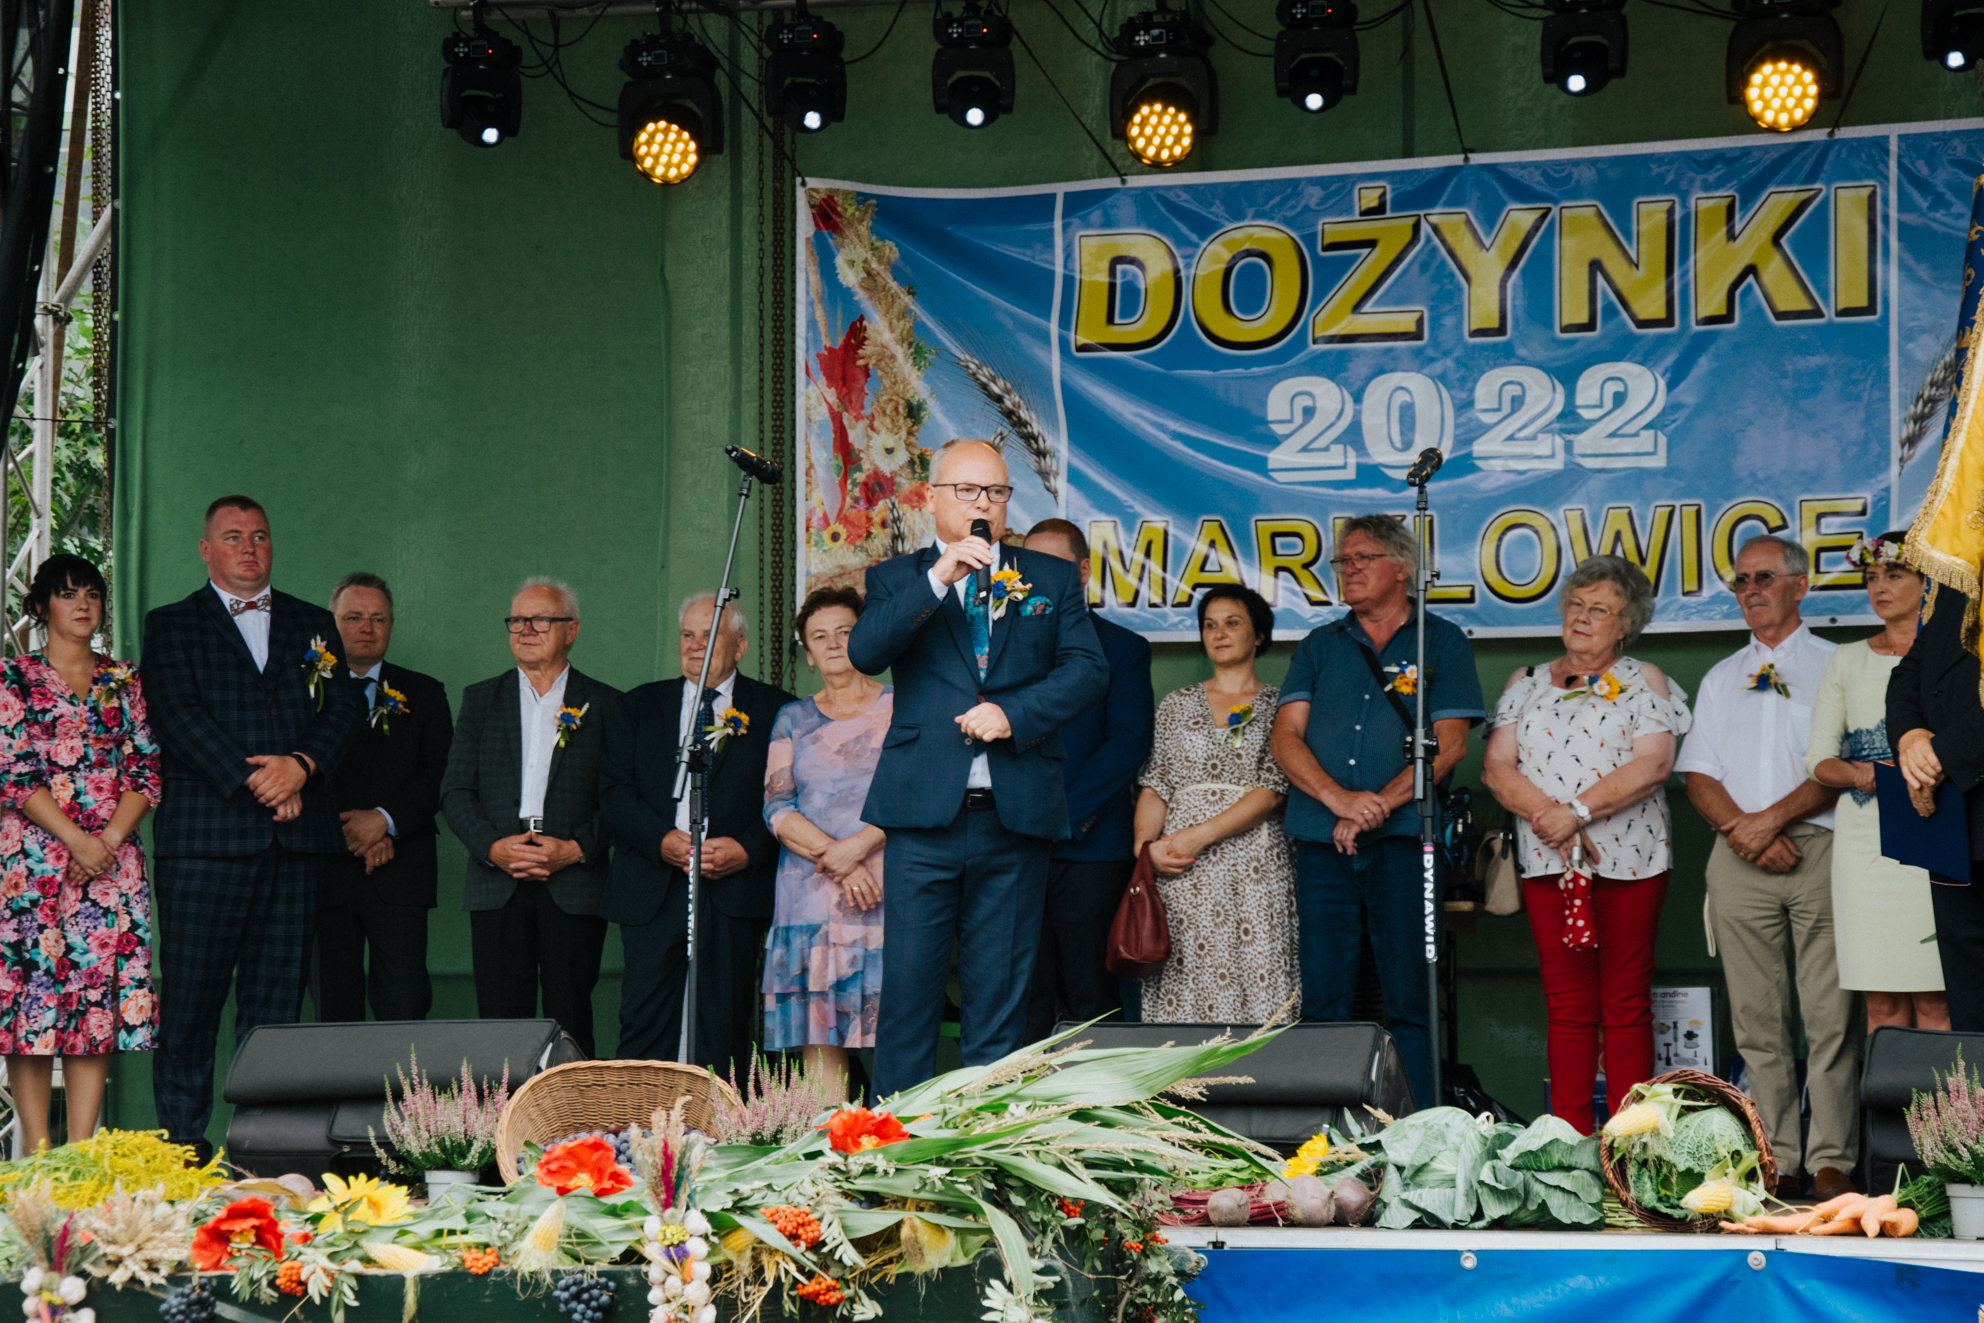 Przemawiający Leszek Bizoń, starosta Powiatu Wodzisławskiego